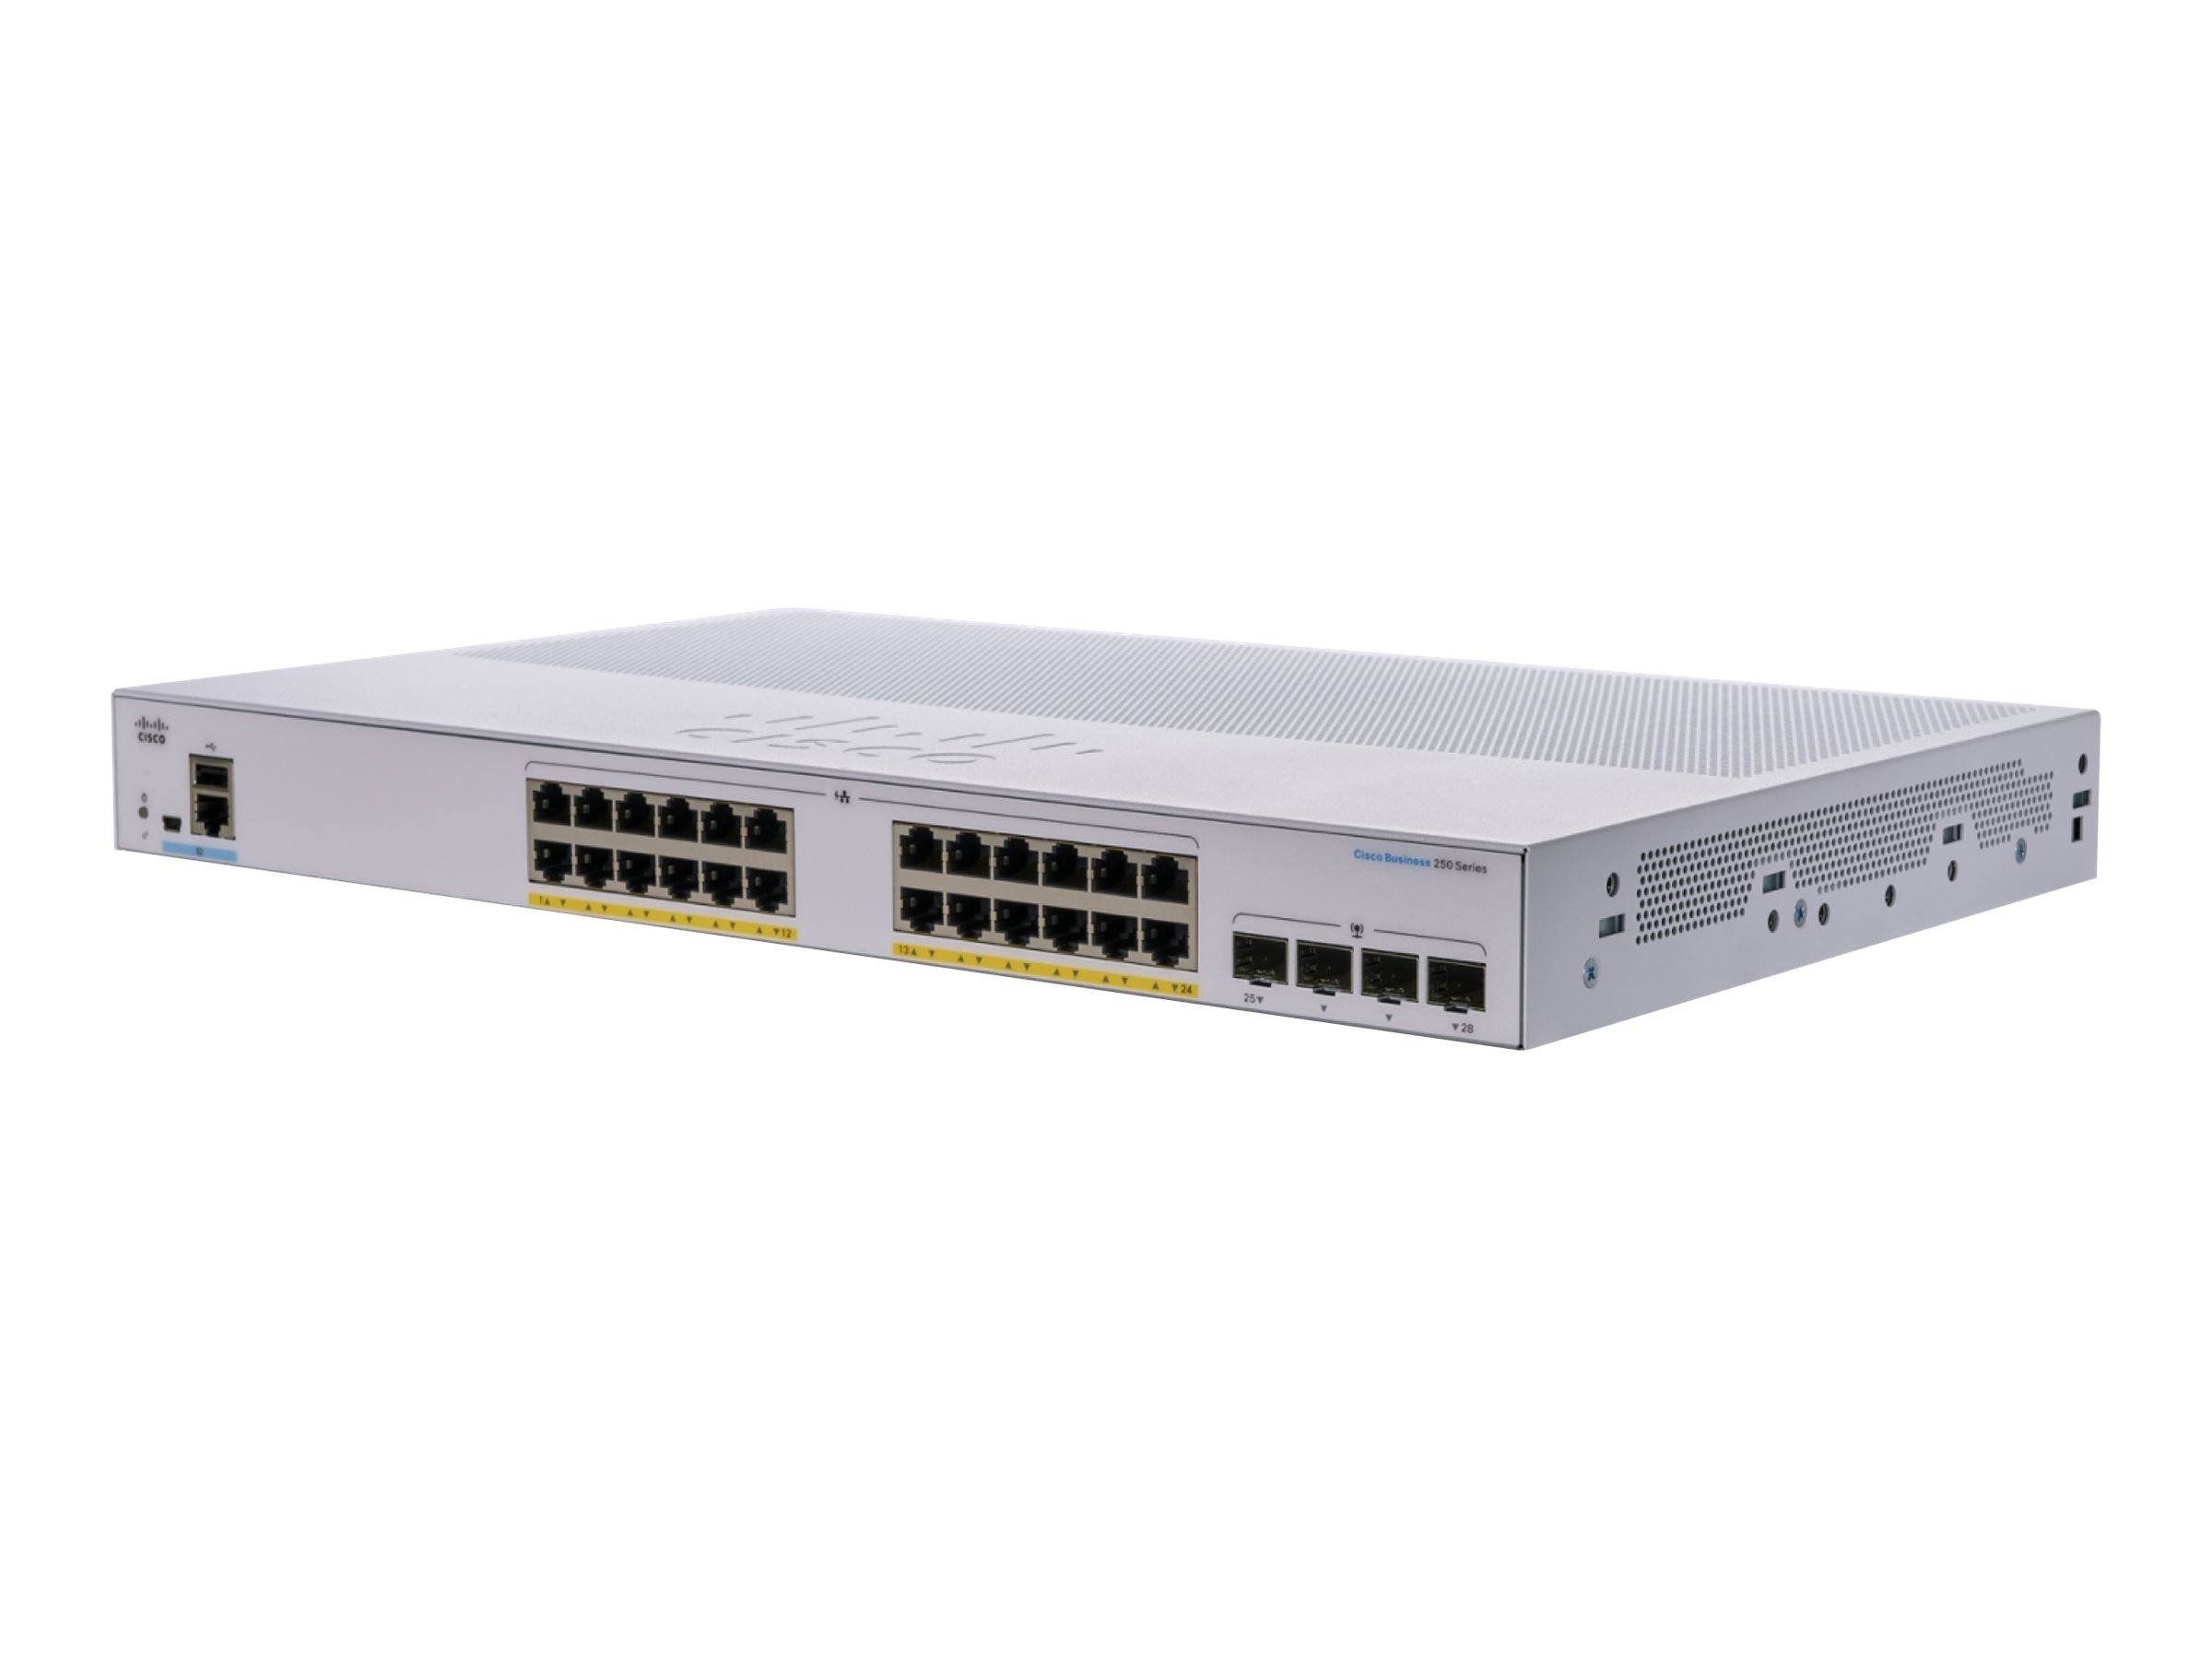 Cisco Business 250 Series CBS250-24P-4X - Commutateur - C3 - intelligent - 24 x 10/100/1000 (PoE+) + 4 x 10 Gigabit SFP+ - Montable sur rack - PoE+ (195 W) - CBS250-24P-4X-EU - Concentrateurs et commutateurs gigabit